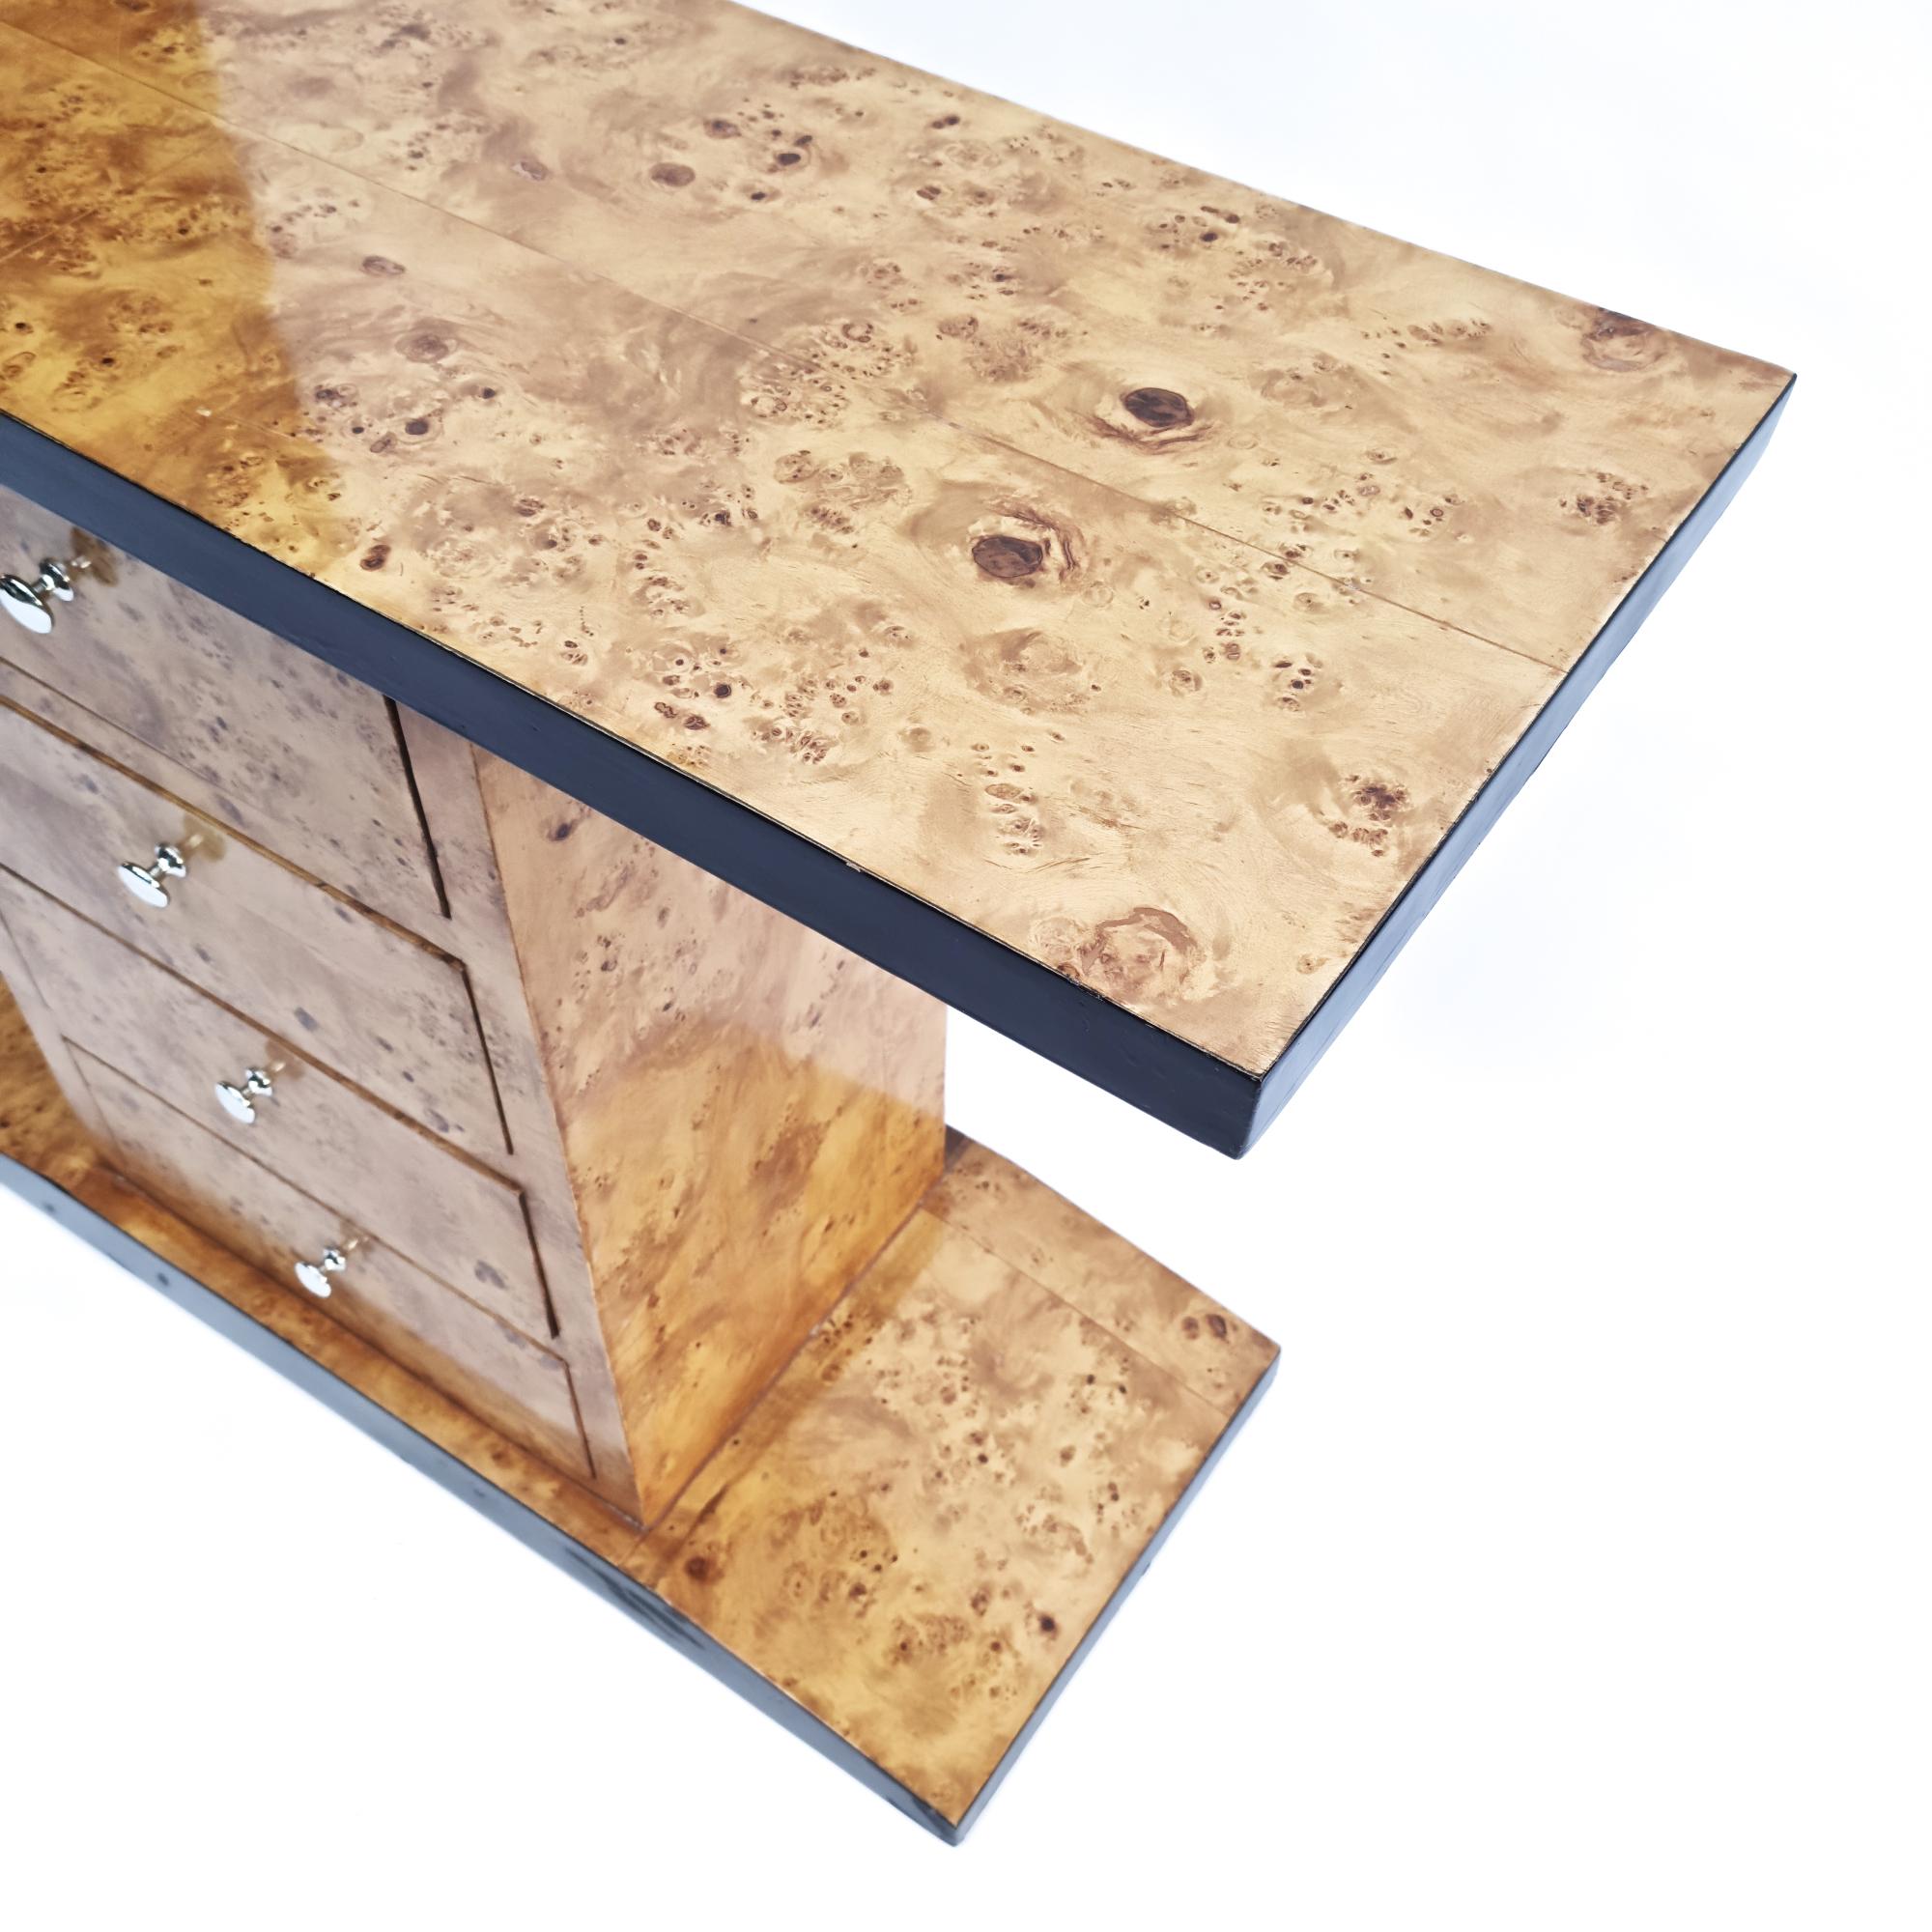 Aparador/credenza/mesa consola de madera de burl. Esta hermosa pieza está construida con materiales como la chapa de madera burlada y la madera lacada en negro. Años 80 - Francia.